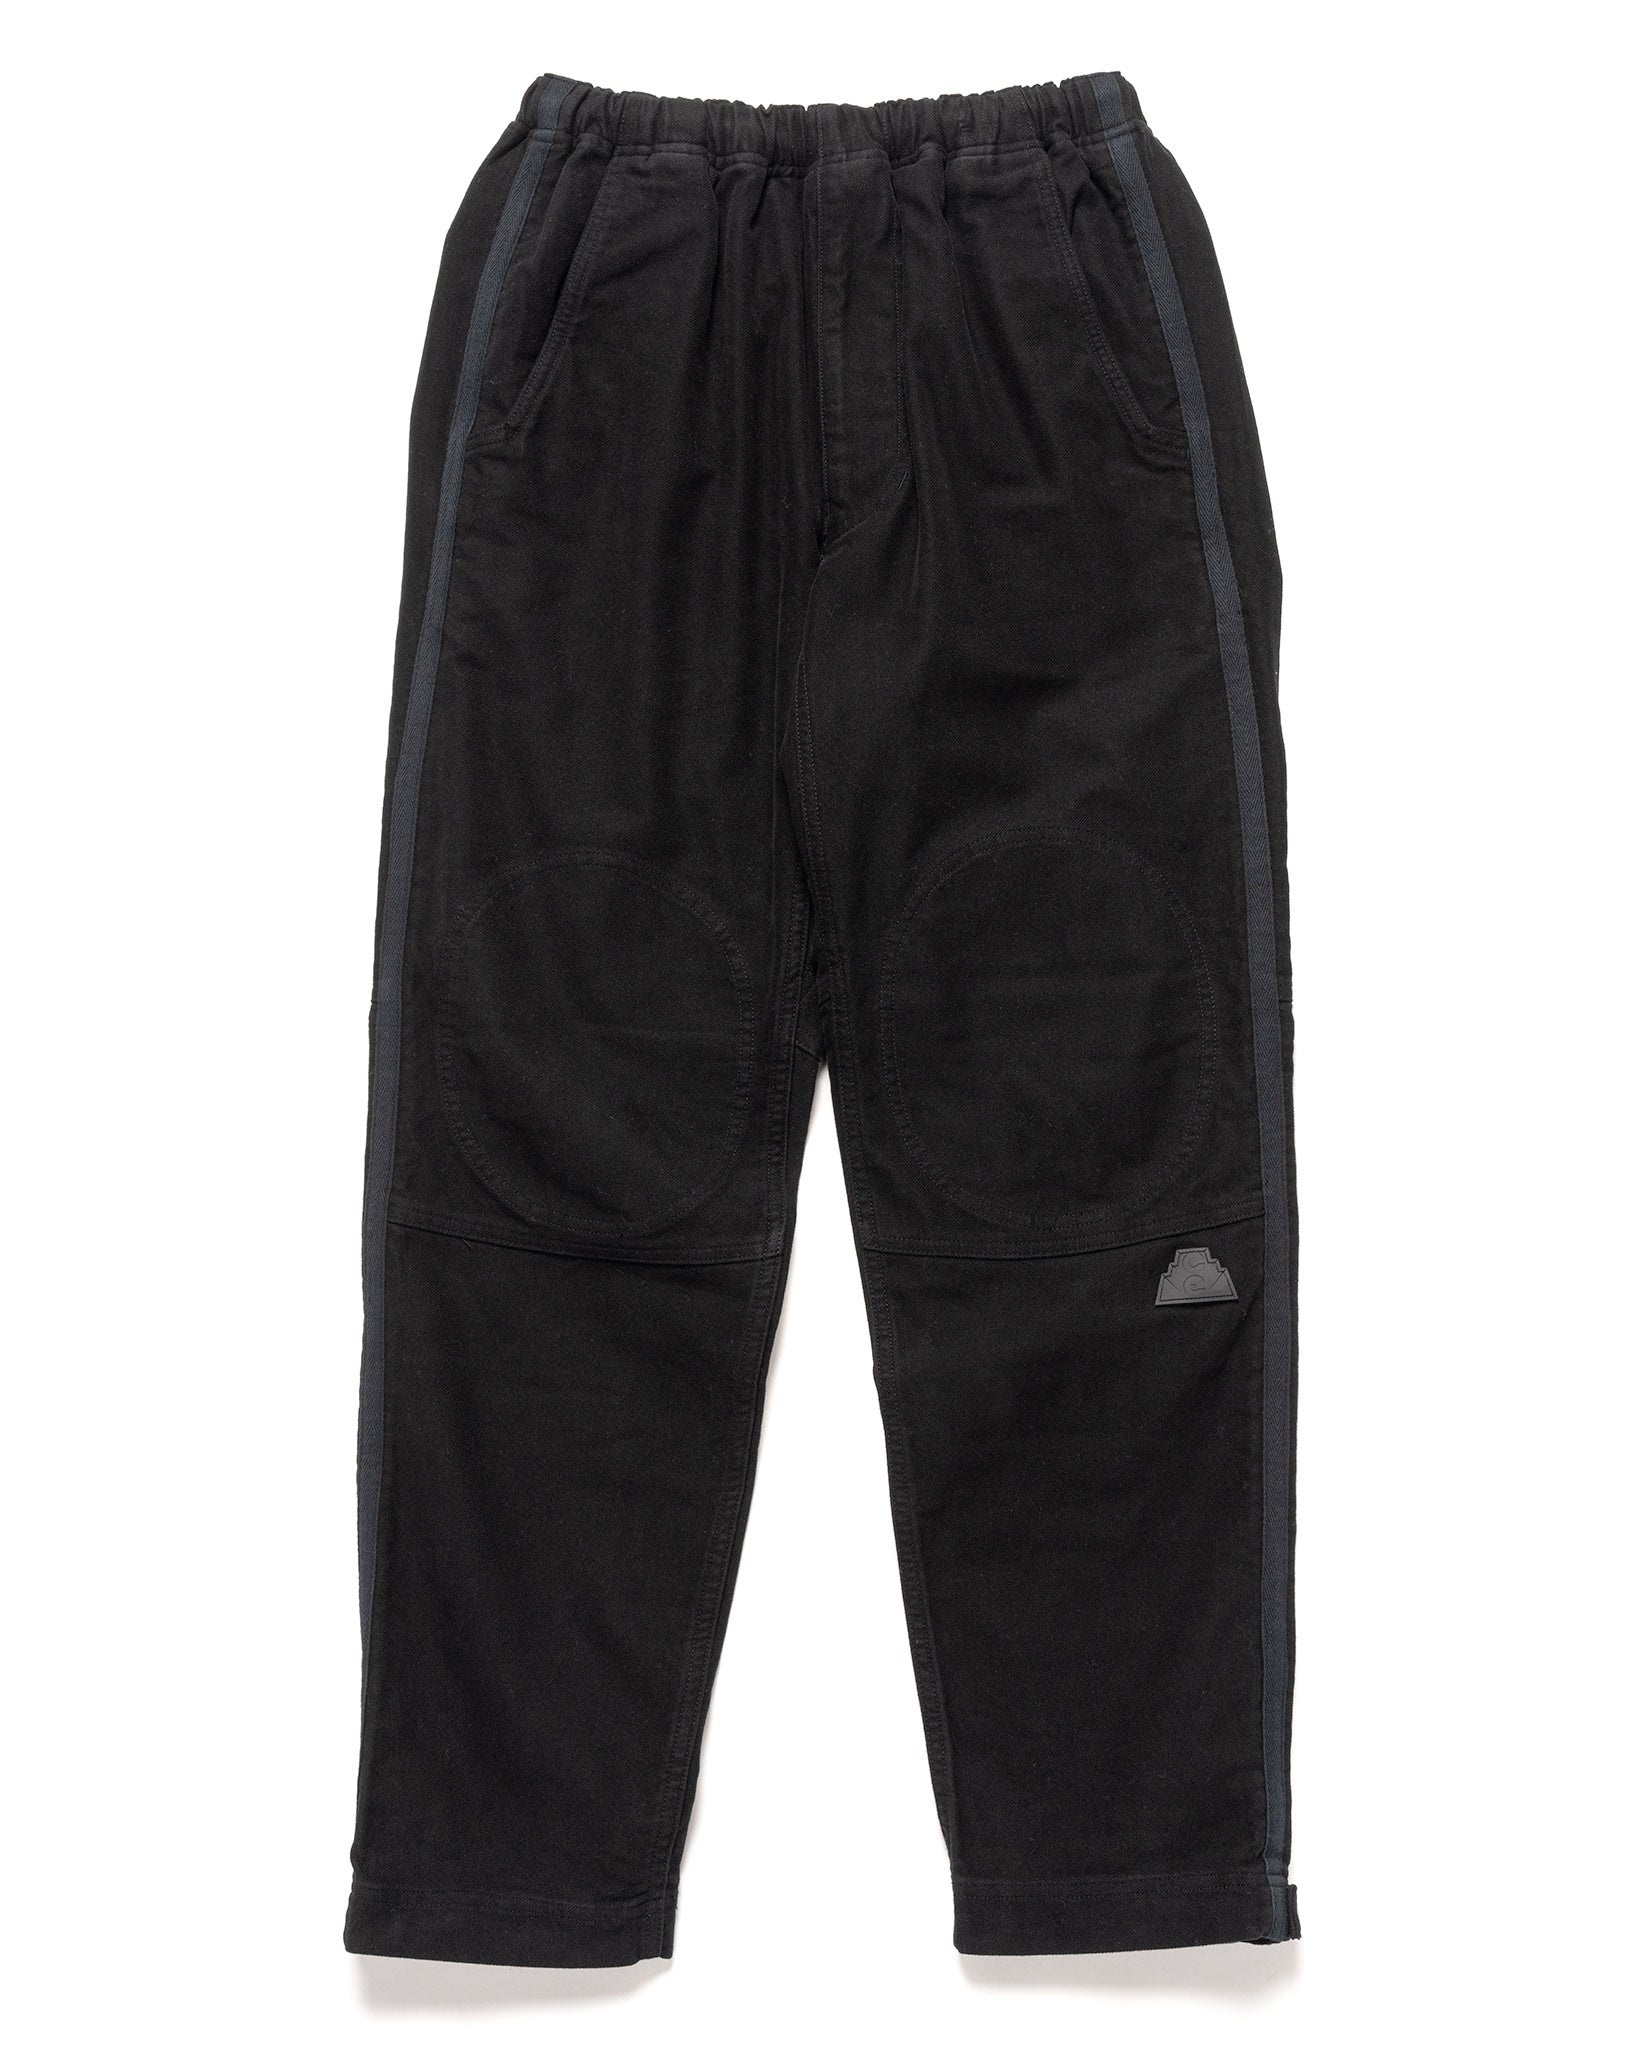 Cotton JMG Pants Black - 1